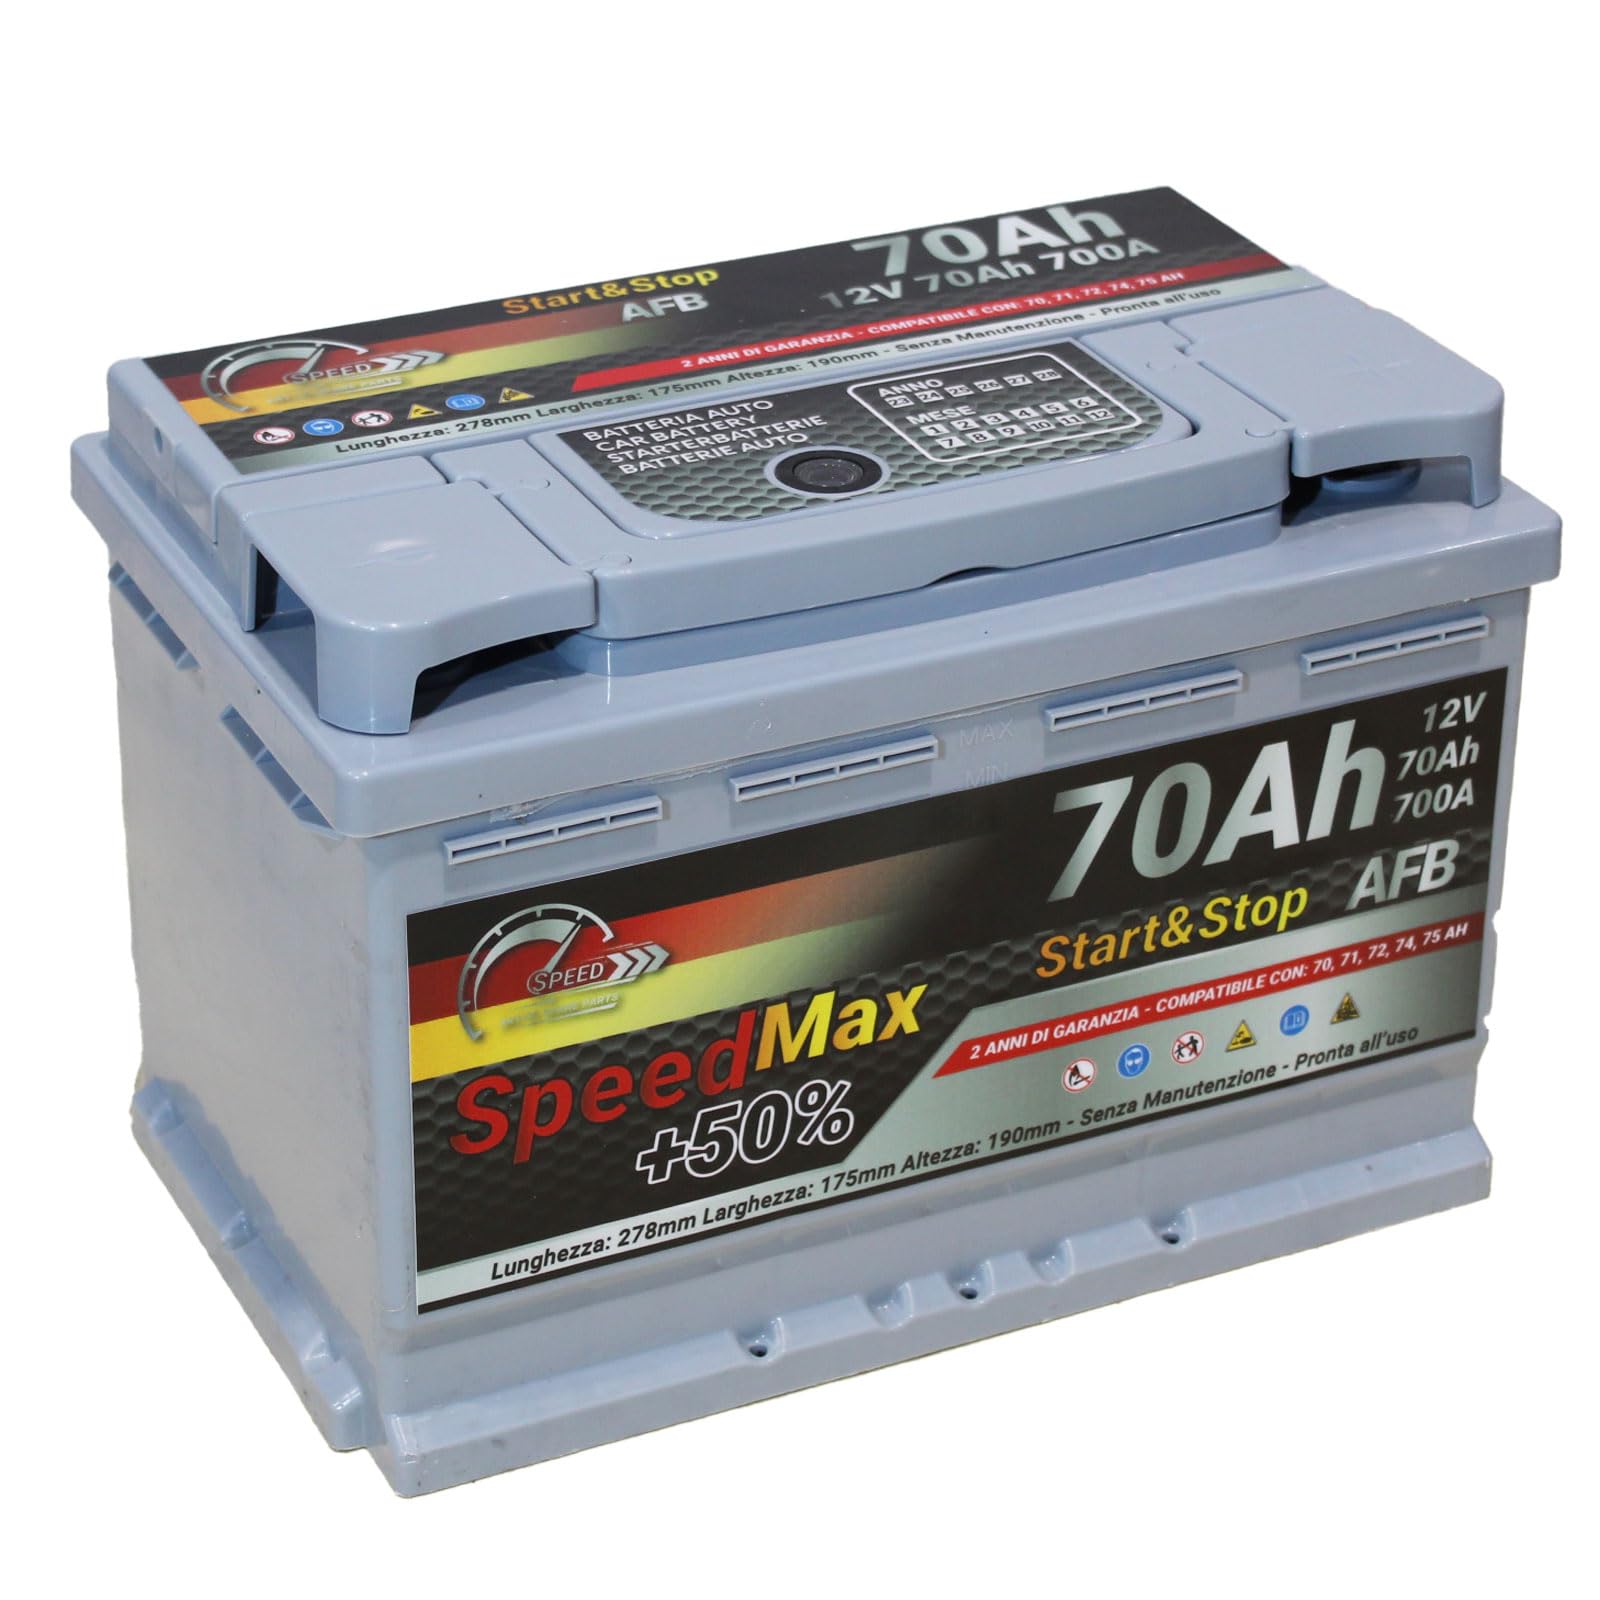 Autobatterie Speed Max 70Ah 700A Starterbatterie 12V Start&Stop AFB L3 von SMC